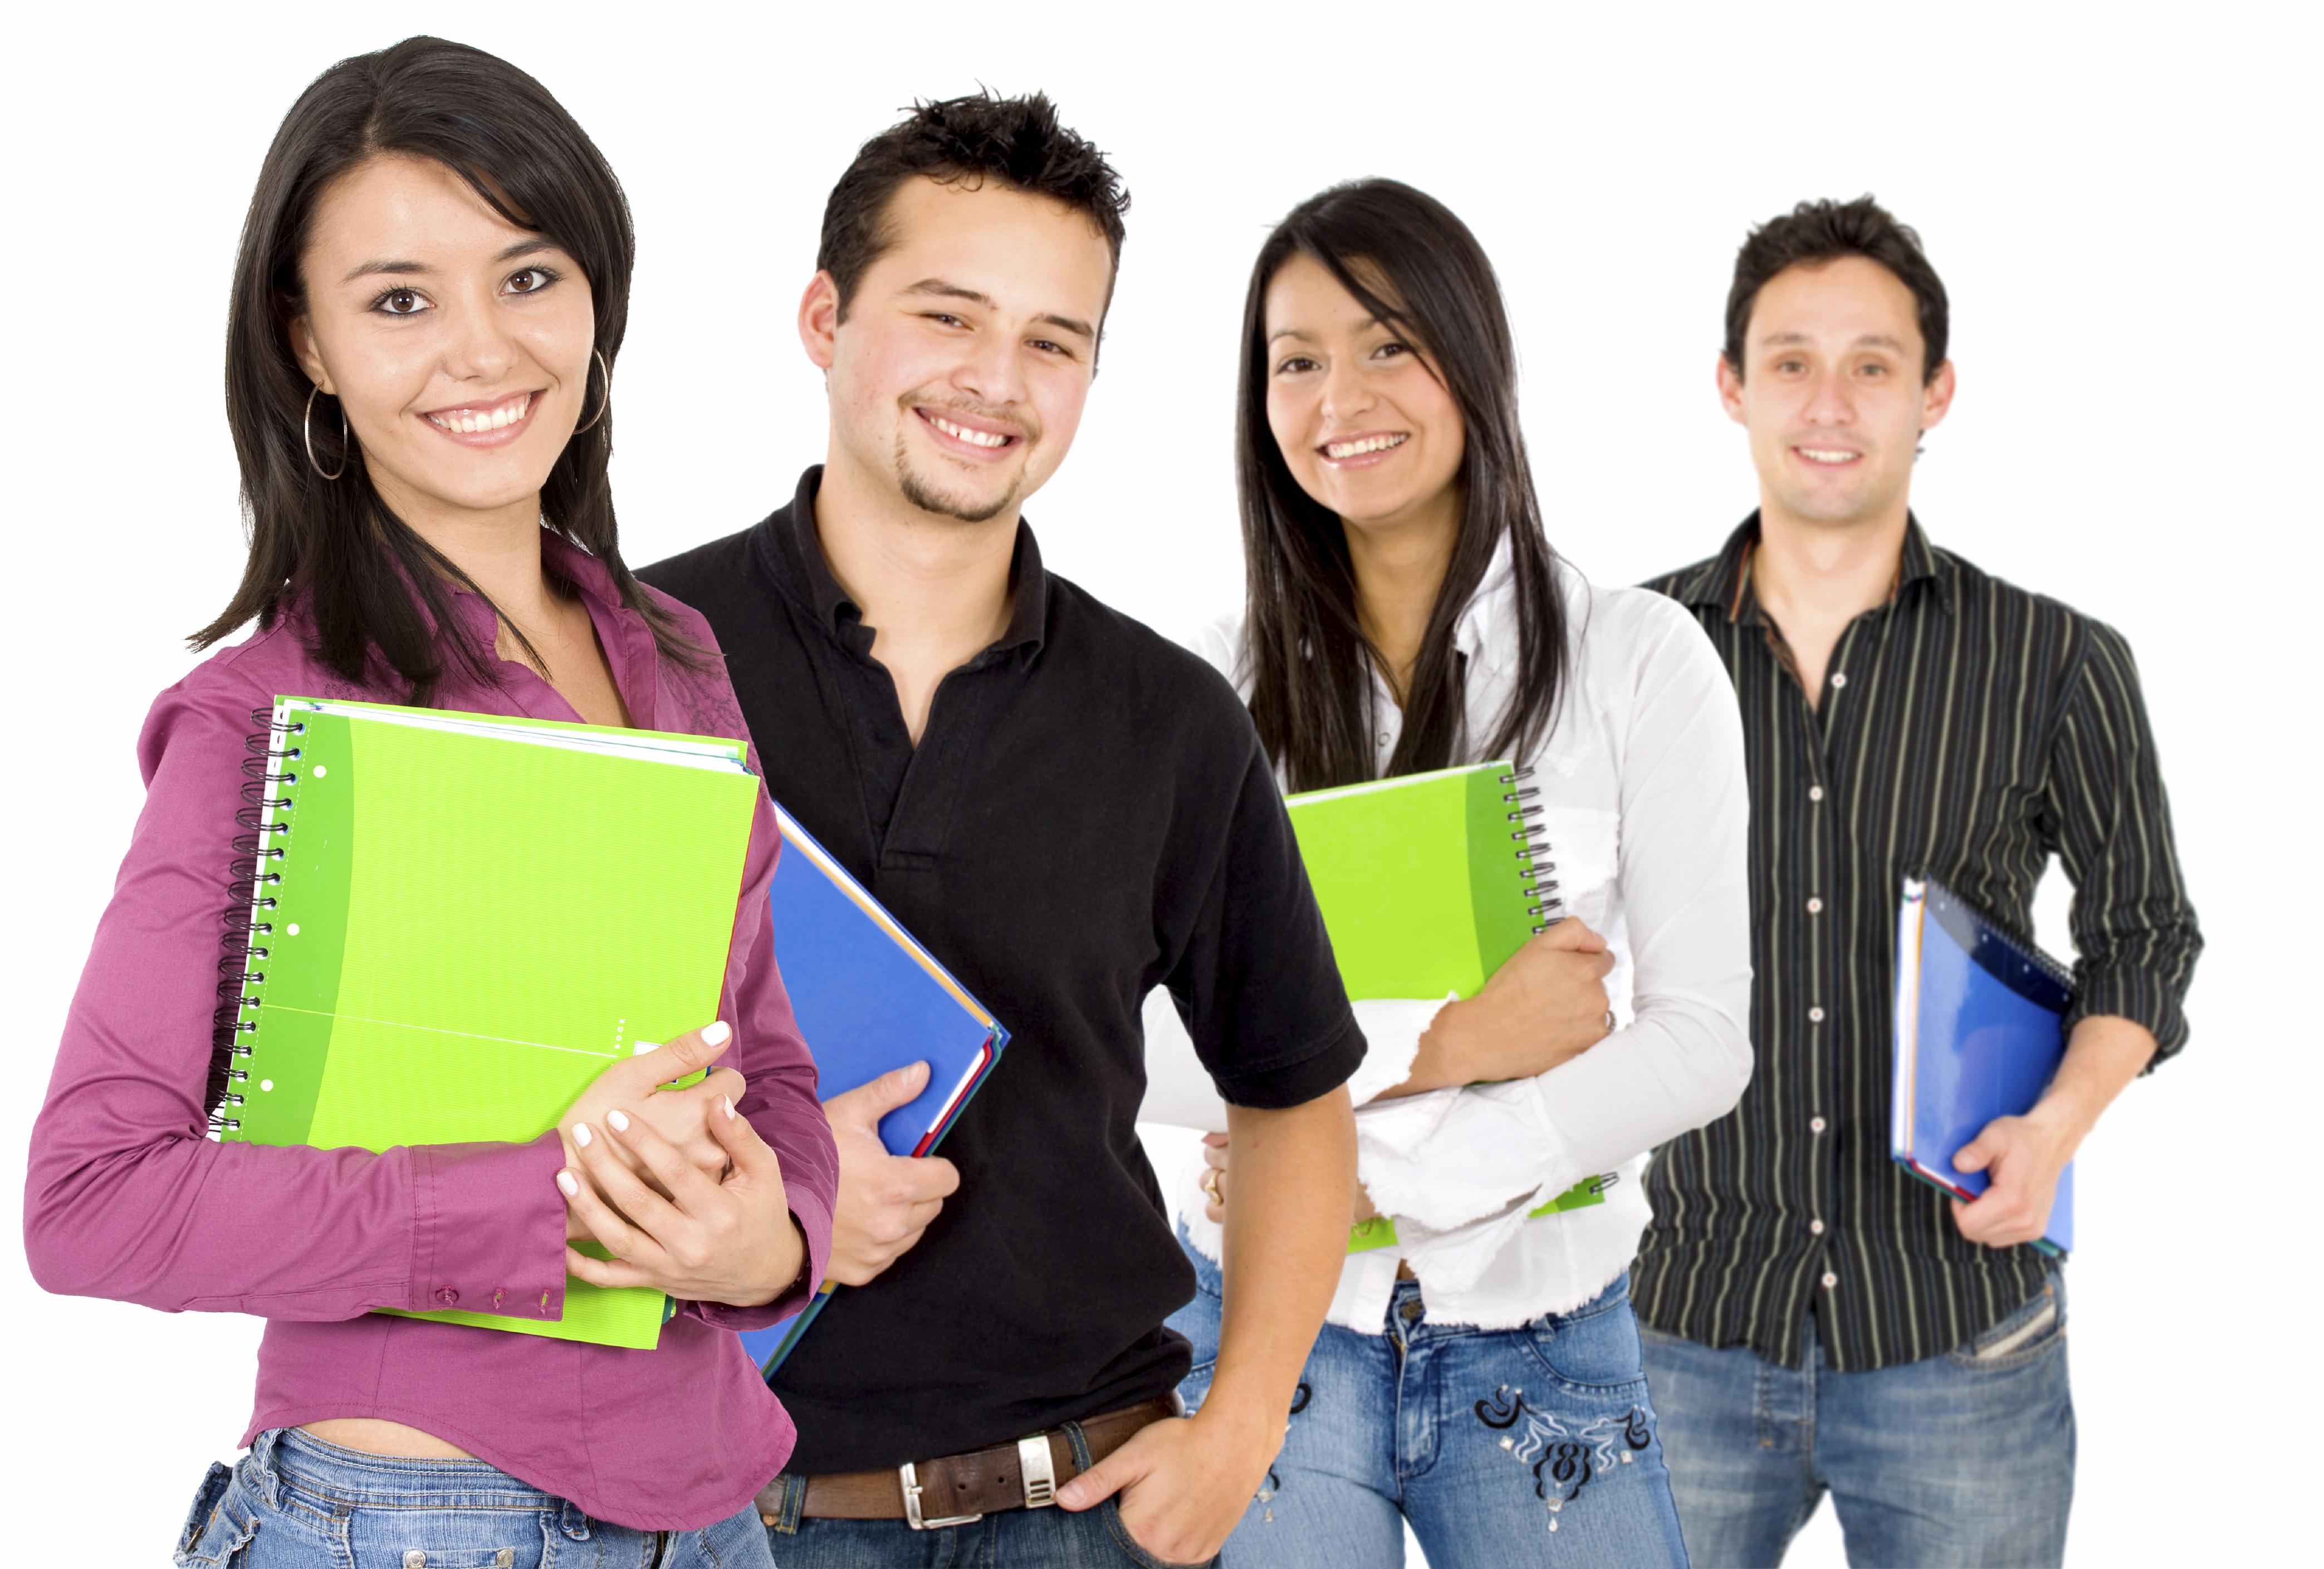 Formazione e studio all'estero, borse di studio e voucher formativi grazie al protocollo Miur-Inps